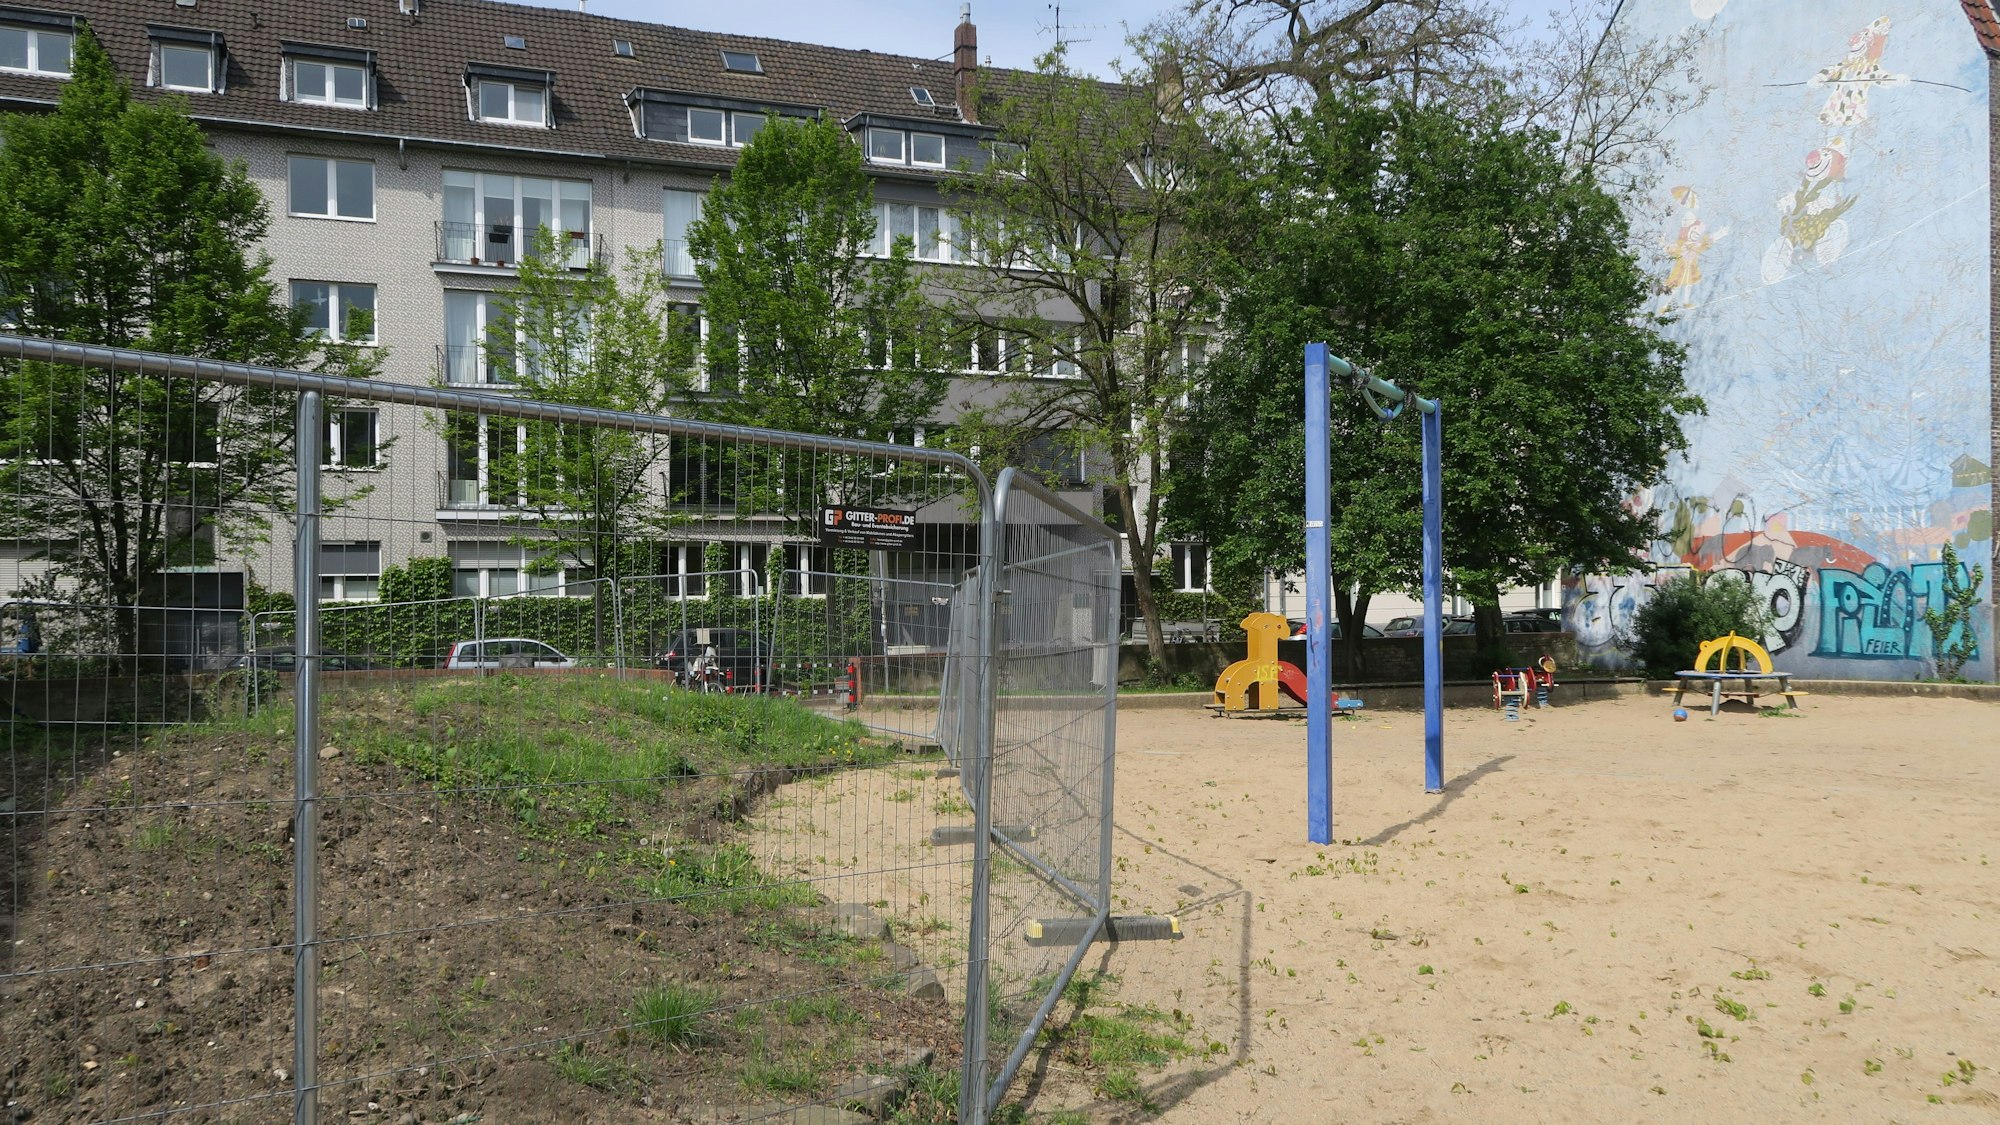 Zaun statt Spielhügel: Ein großer Teil des Spielplatzes an der Platenstraße ist derzeit gesperrt.